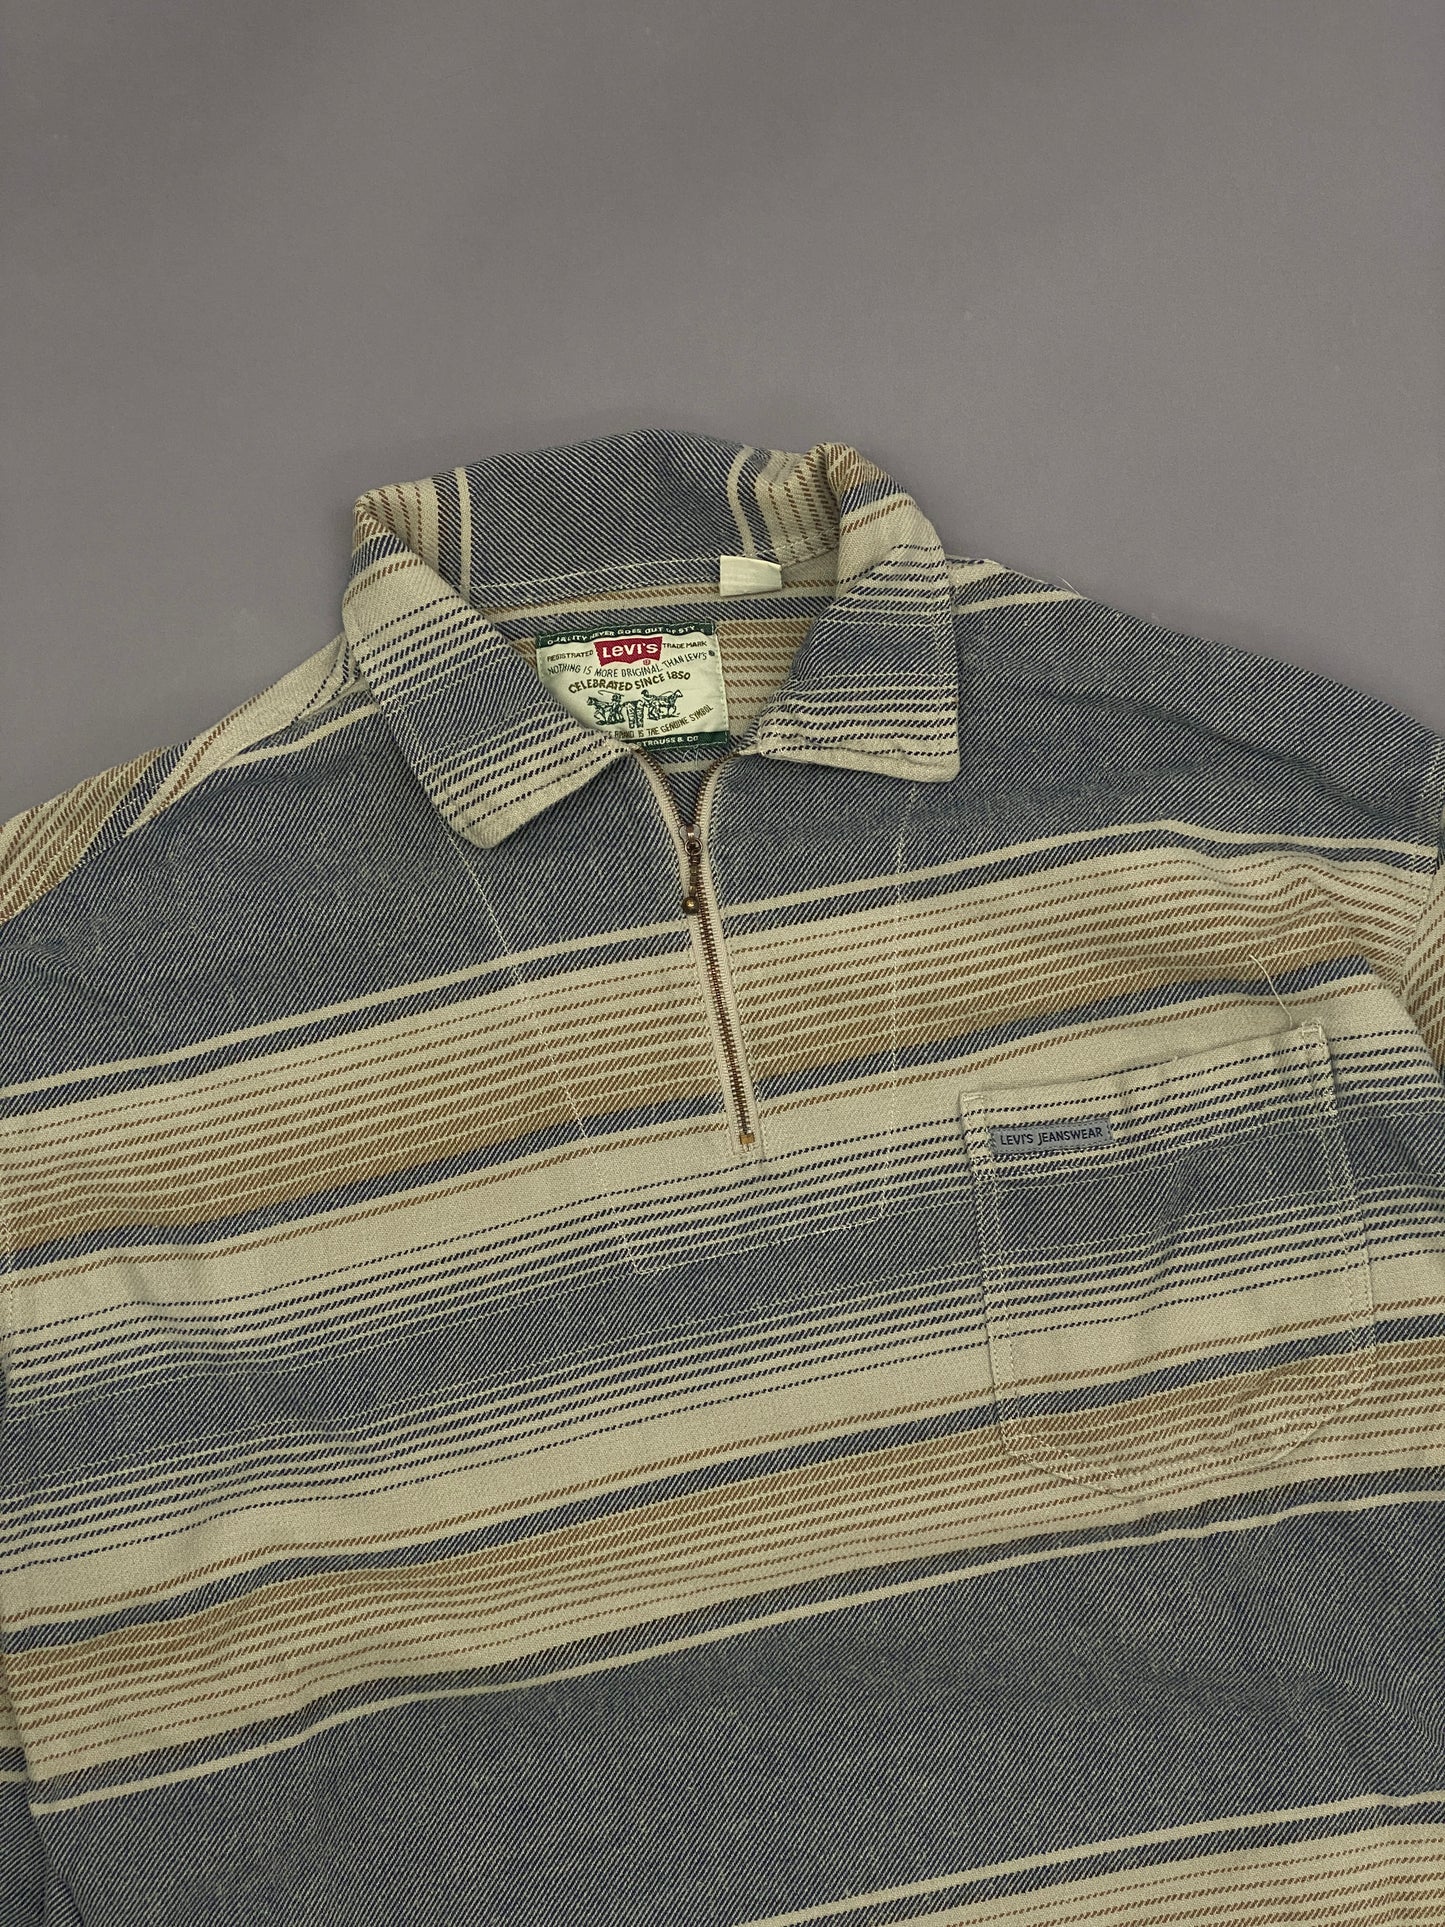 Camisa Levis Half Zip Vintage